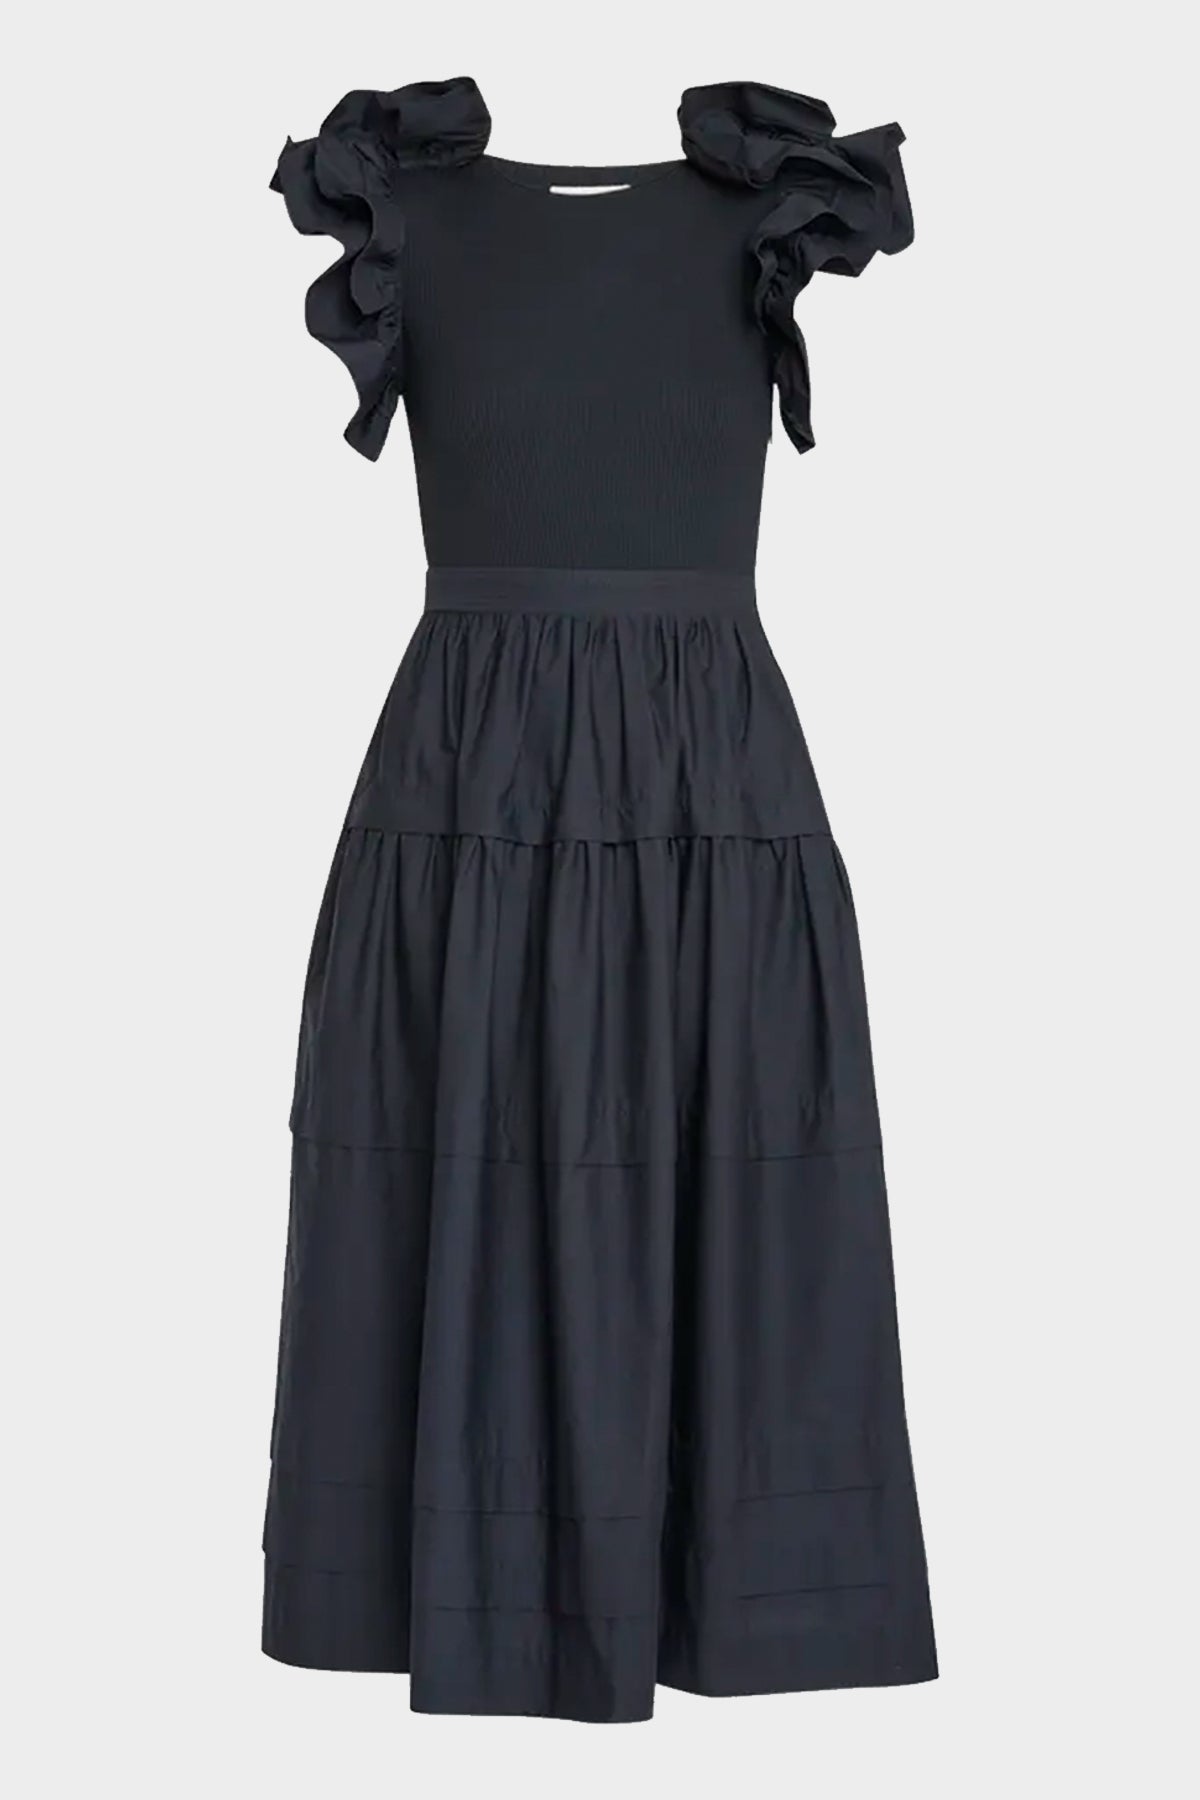 Francine Midi Dress in Noir - shop-olivia.com